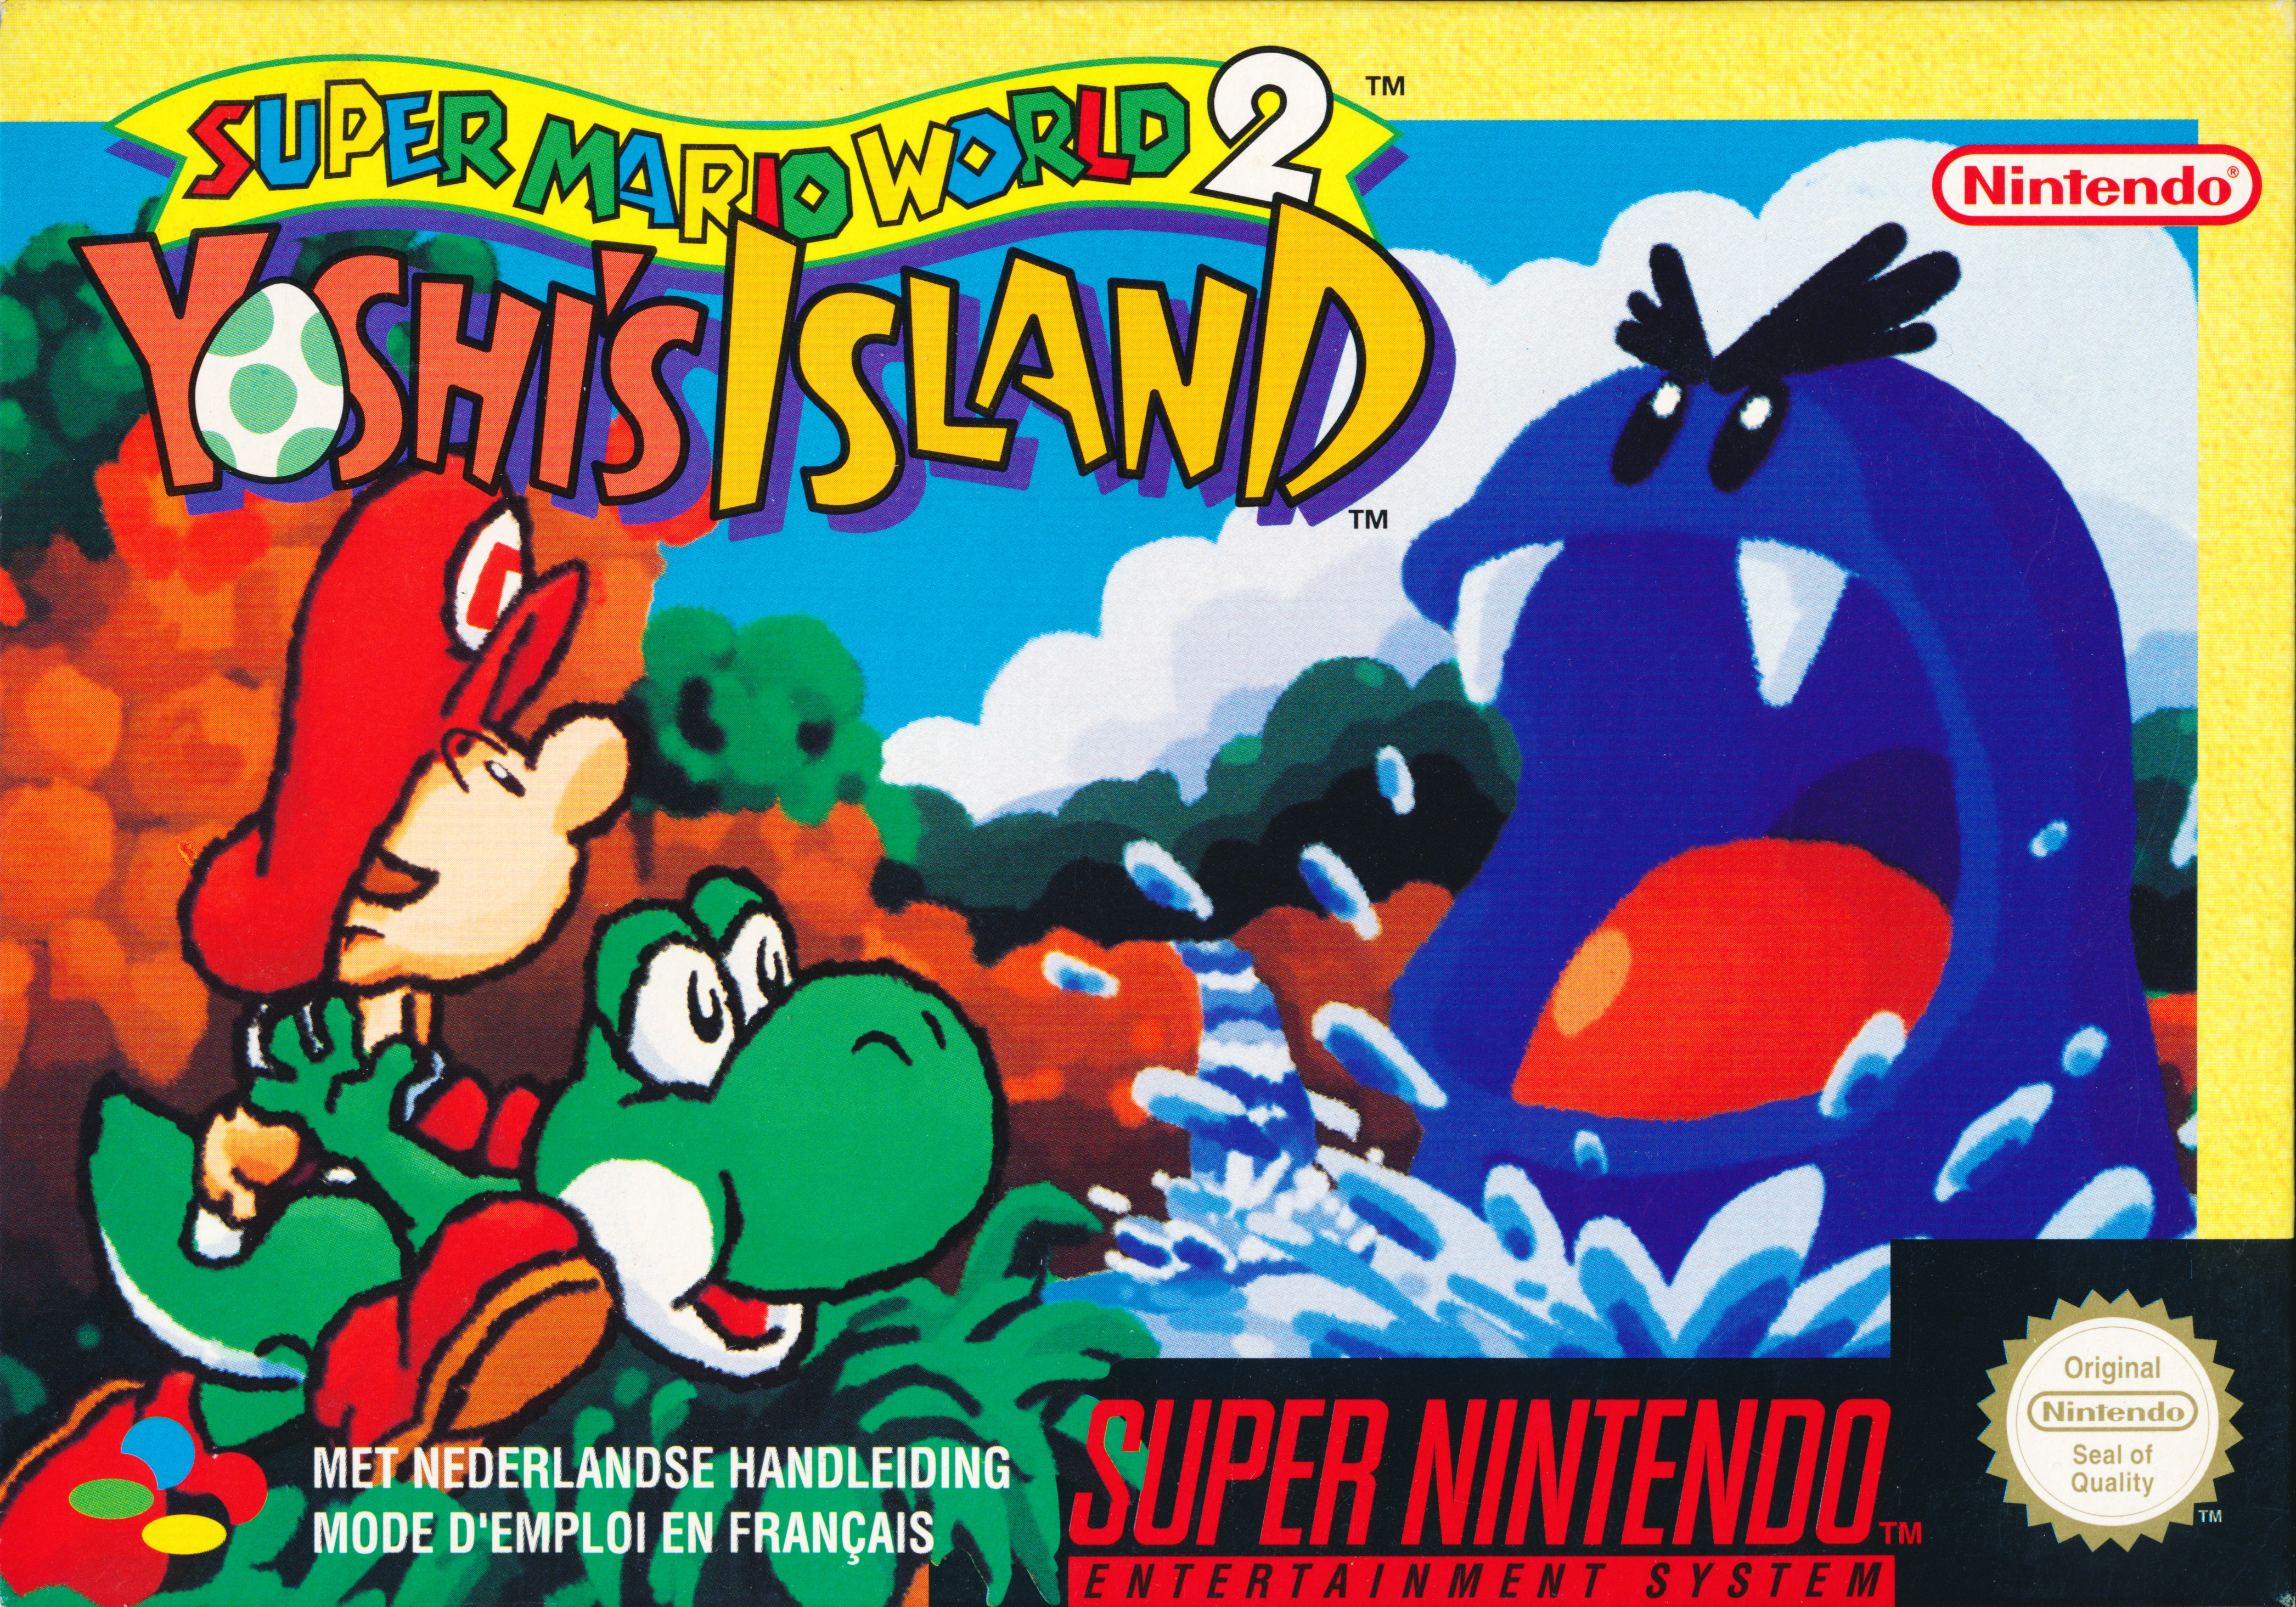 Yoshi island 2. Super Mario World 2 - Yoshi's Island Snes. Super Mario World 2 Snes. Super Mario World супер Нинтендо. Super Mario World 2 Yoshis Island.